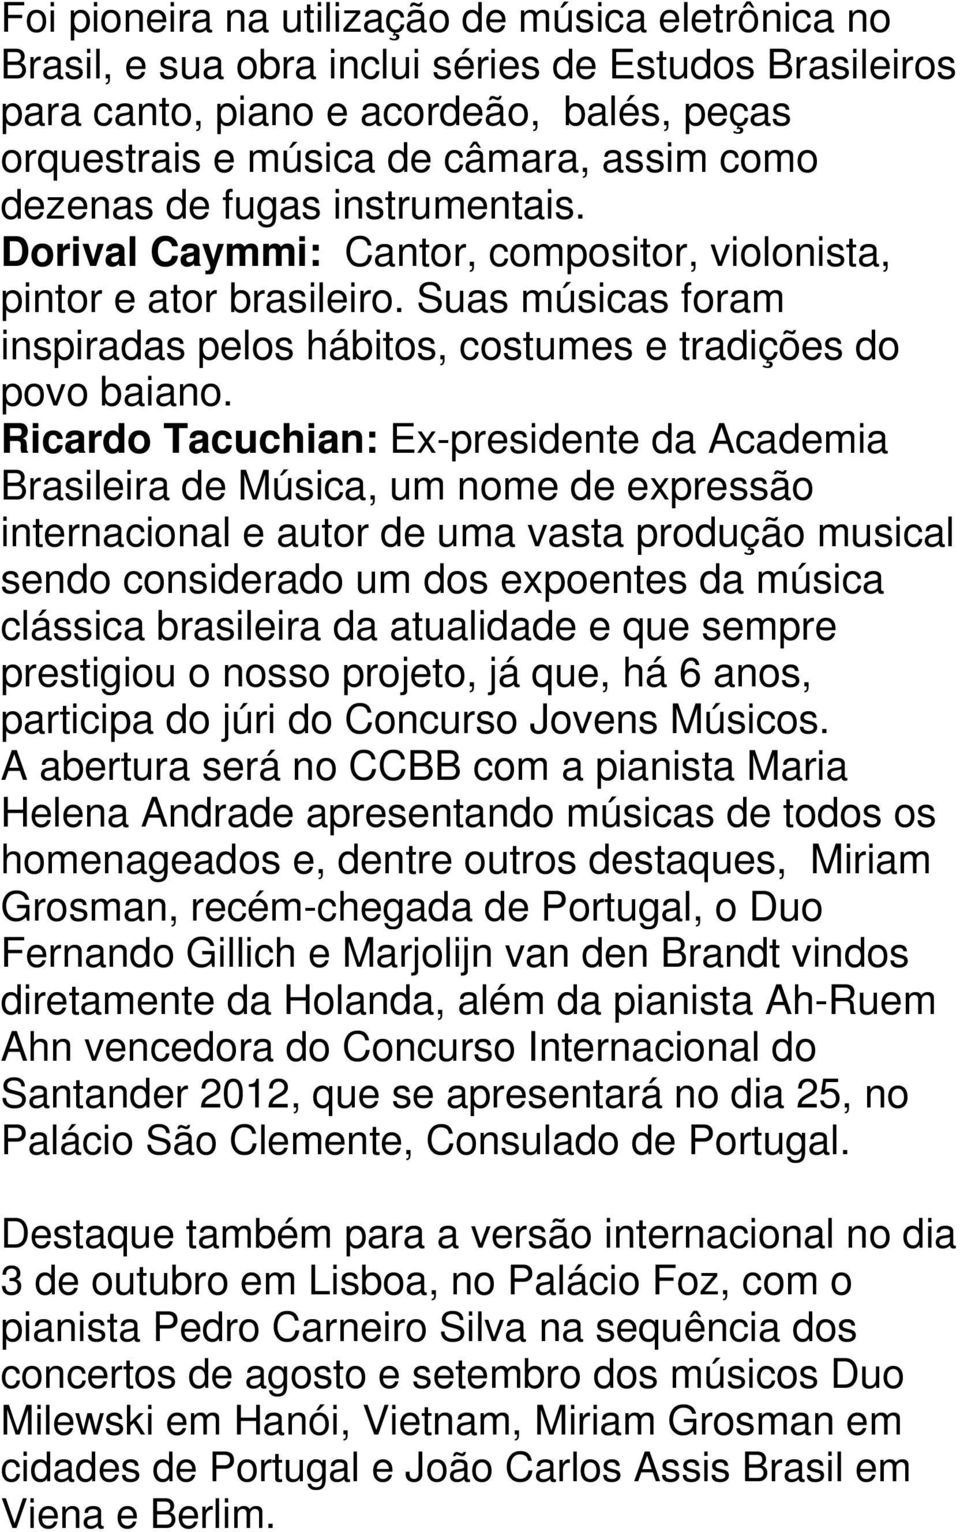 Ricardo Tacuchian: Ex-presidente da Academia Brasileira de Música, um nome de expressão internacional e autor de uma vasta produção musical sendo considerado um dos expoentes da música clássica